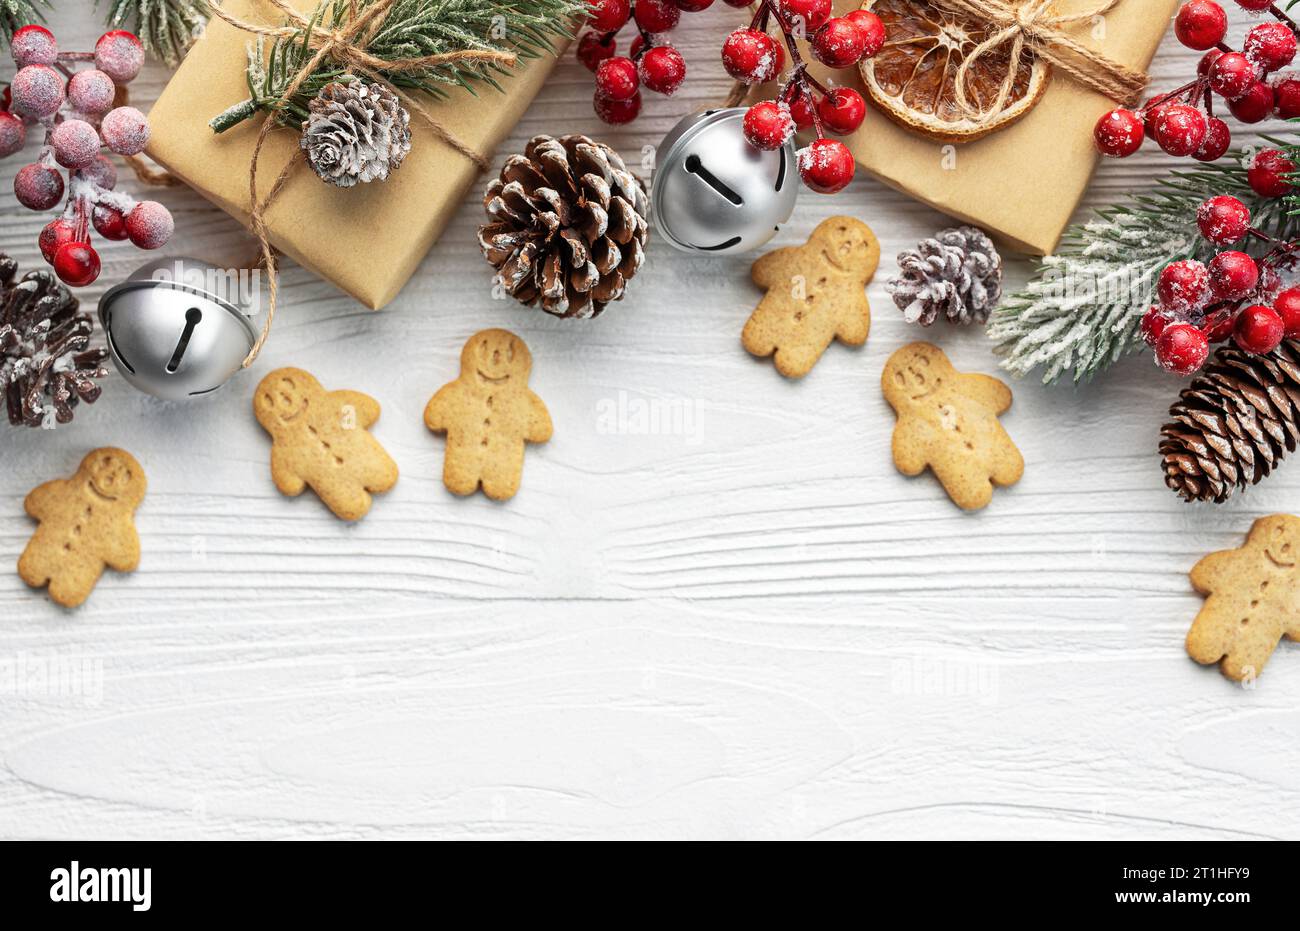 Weihnachtsgeschenke, Lebkuchenkekse, Dekorationen mit weihnachtsbaum auf weißem hölzernem Hintergrund Stockfoto